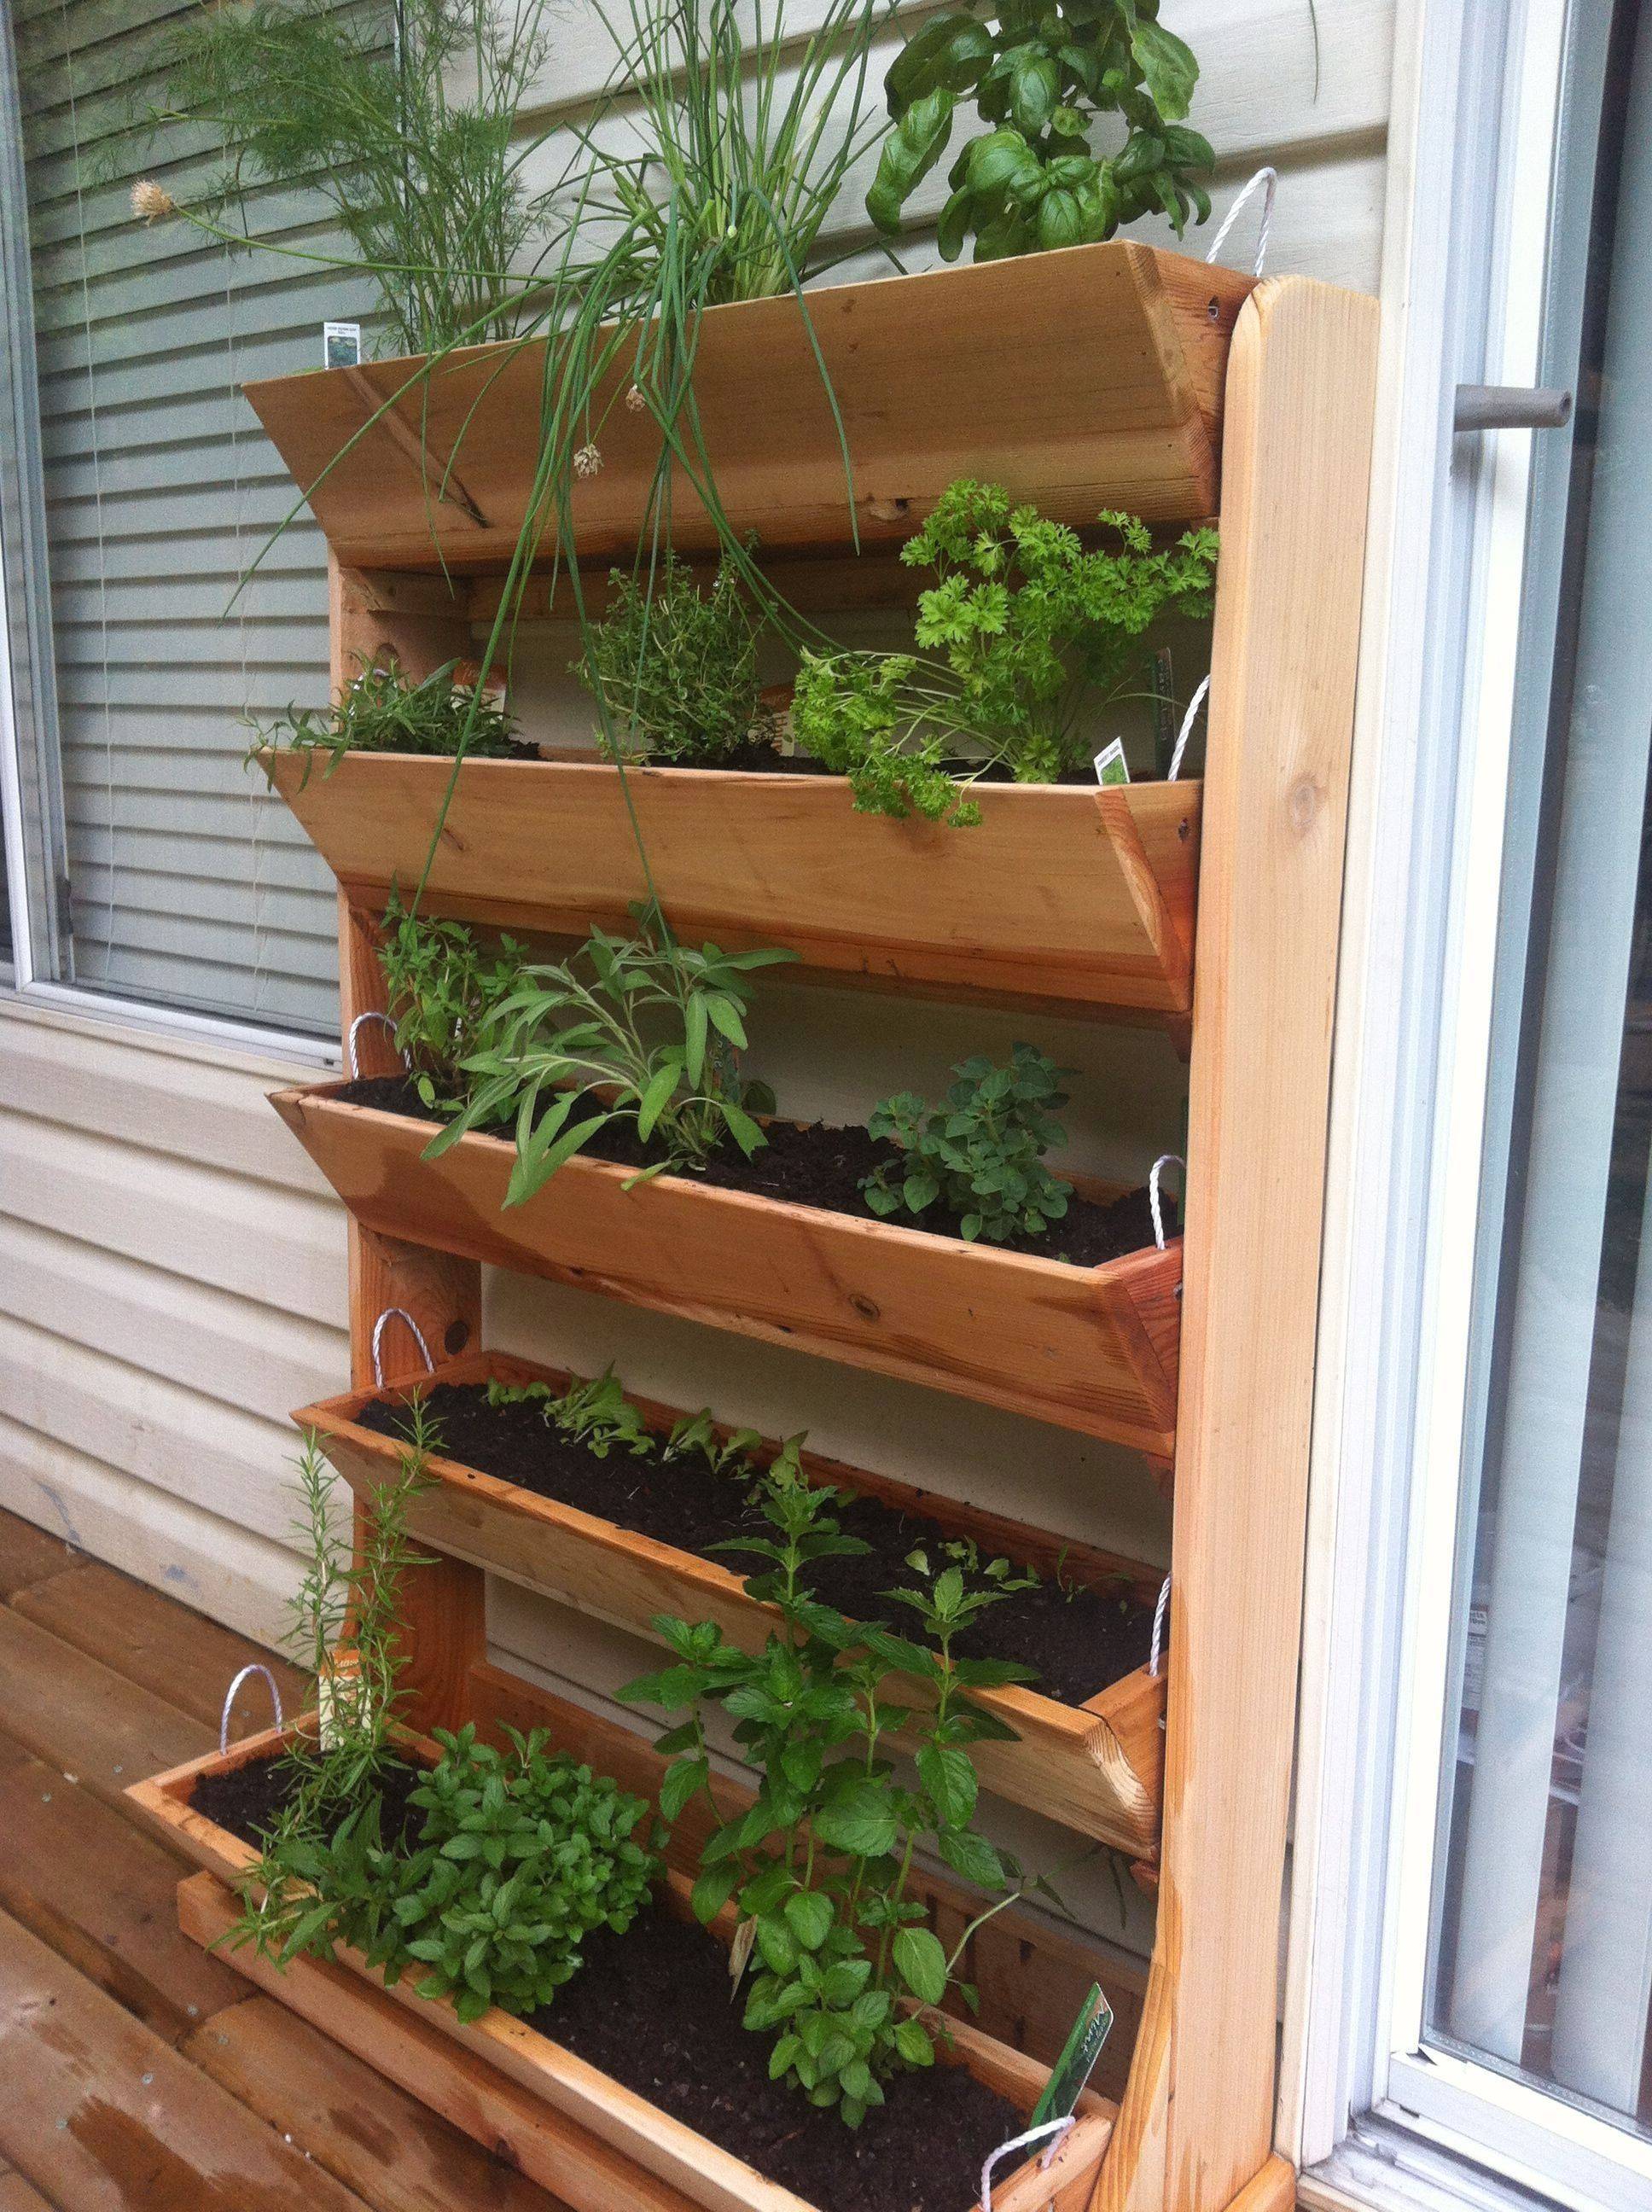 Creative Indoor Herb Garden Ideas